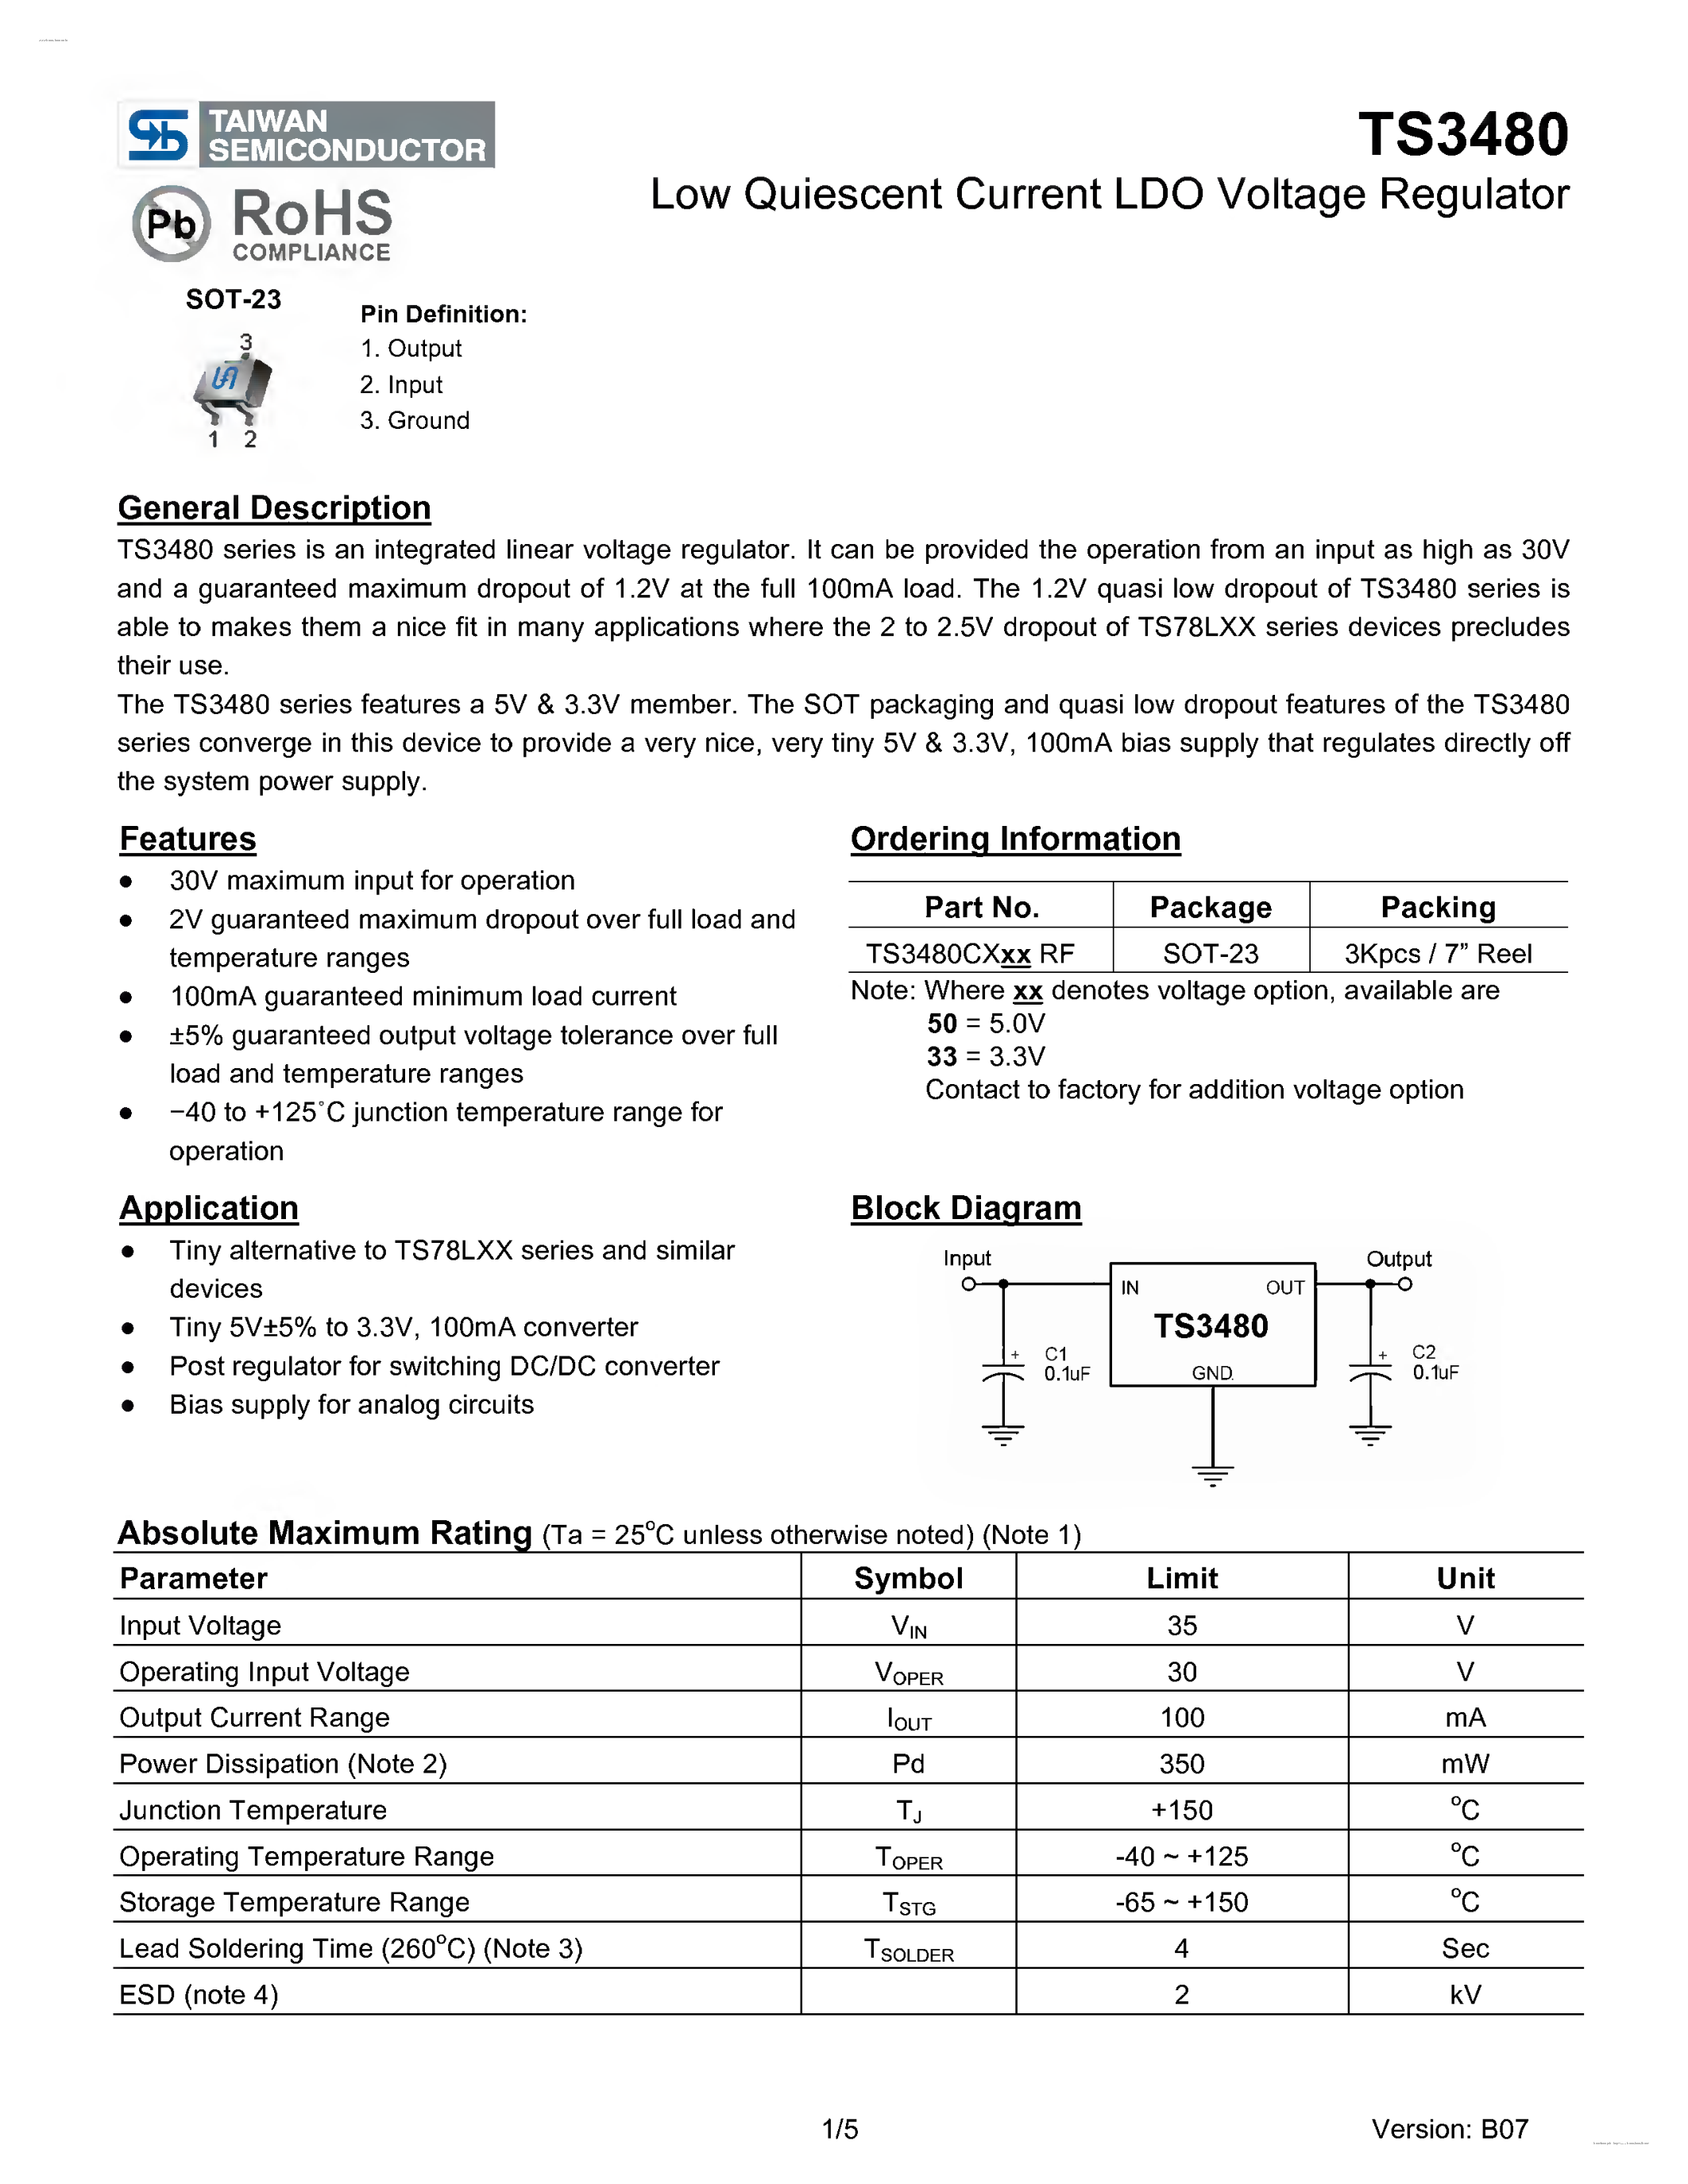 Даташит TS3480 - Low Quiescent Current LDO Voltage Regulator страница 1